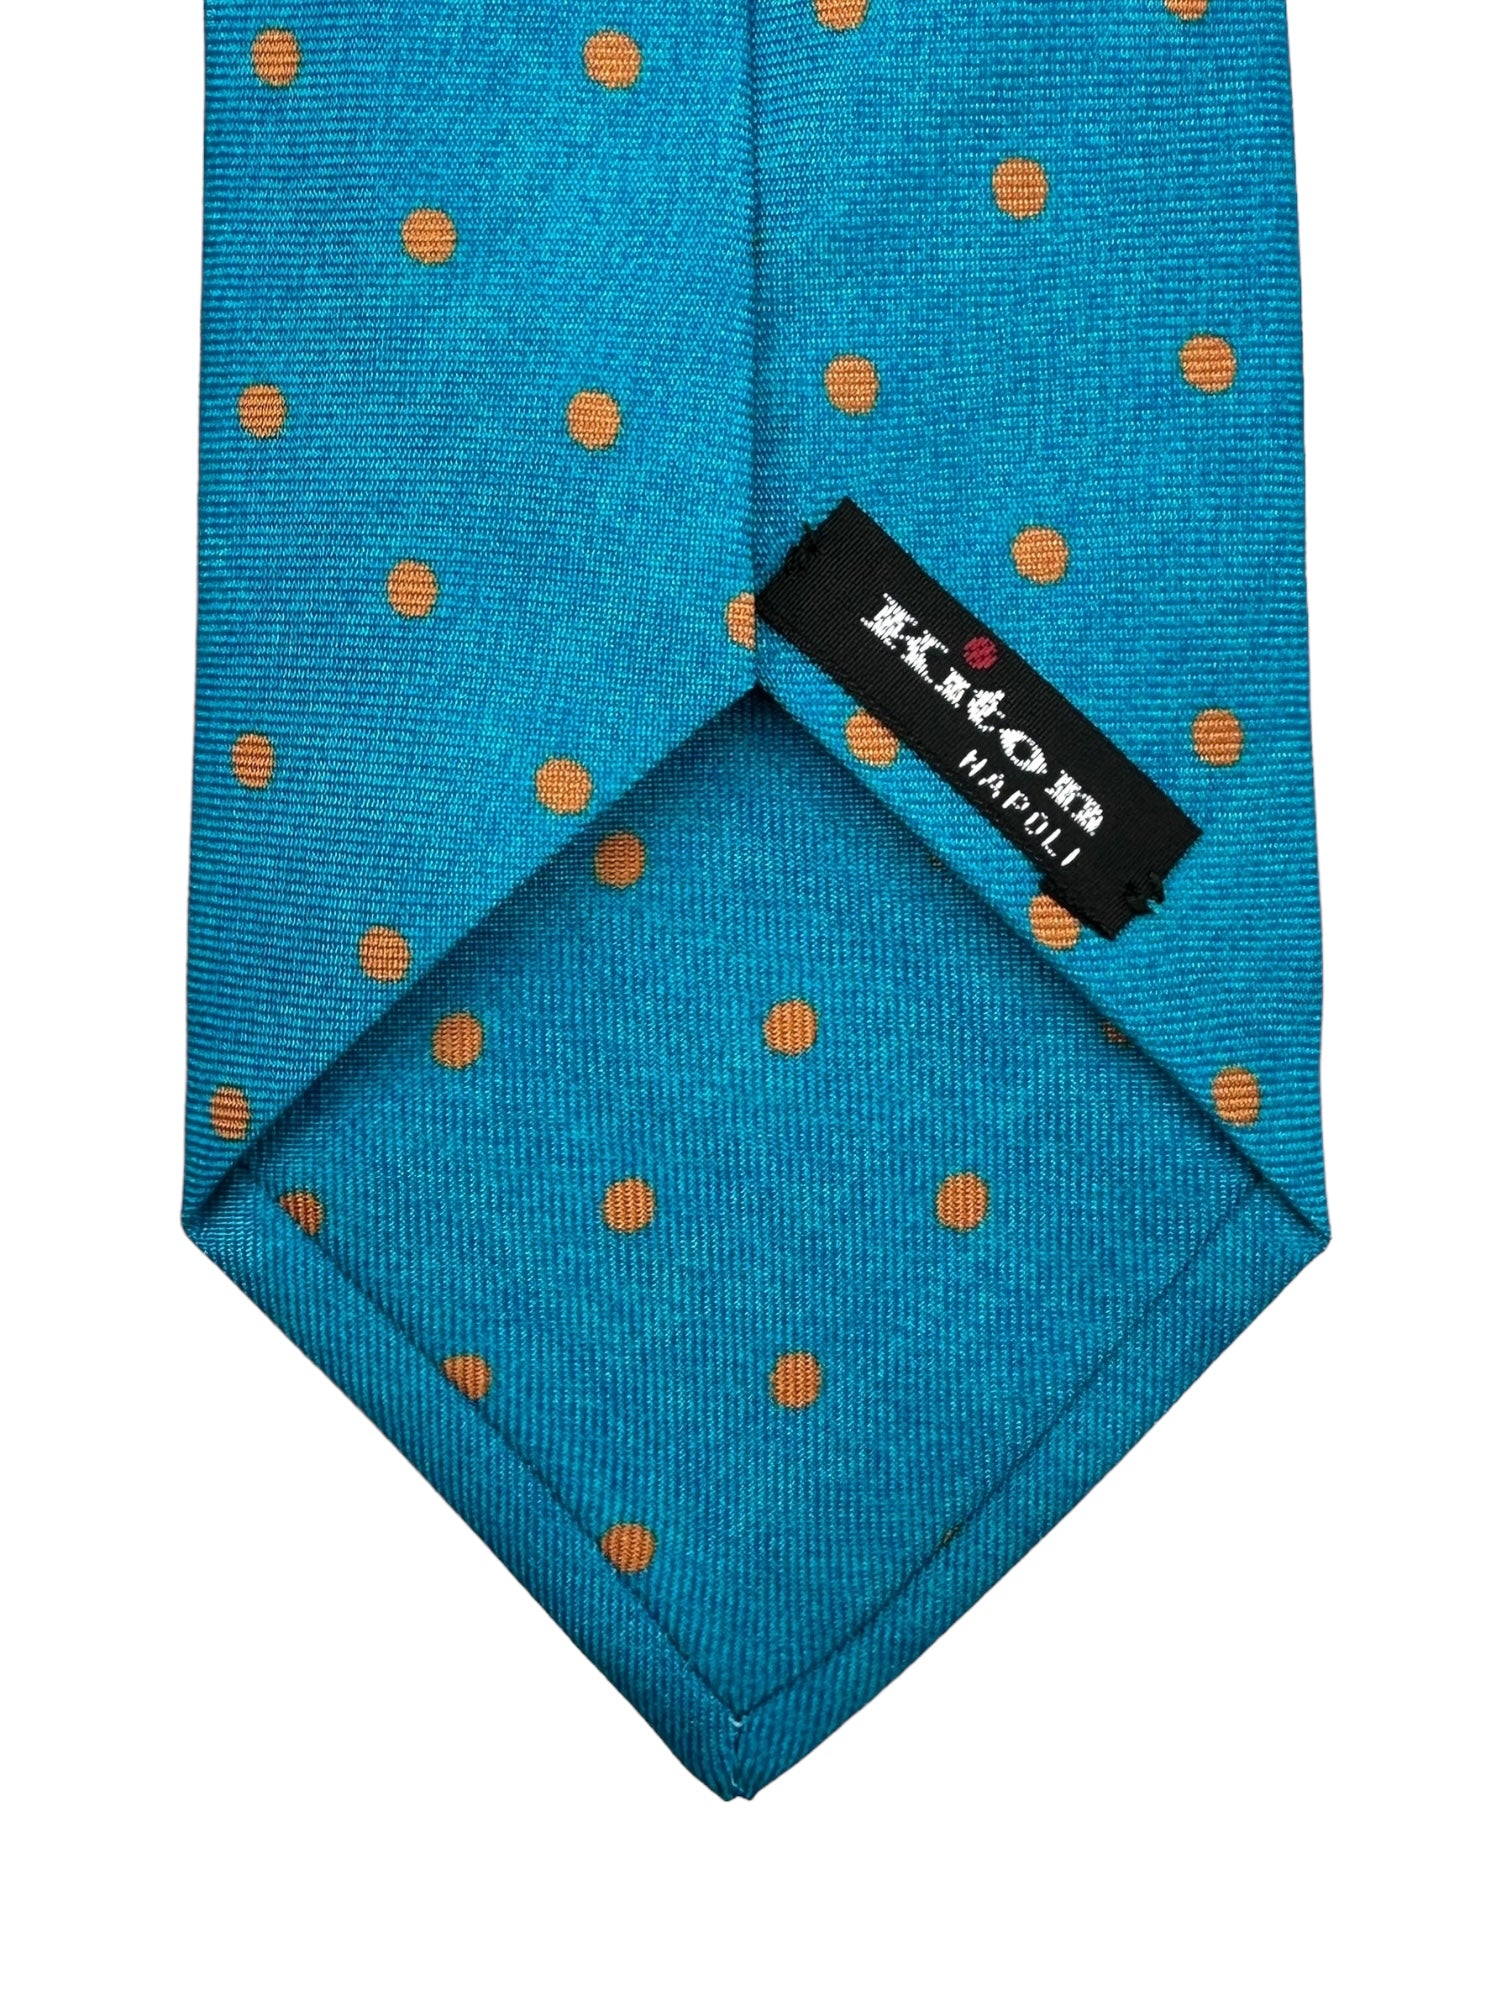 Kiton 7-Fold Turquoise Polka Dot Tie